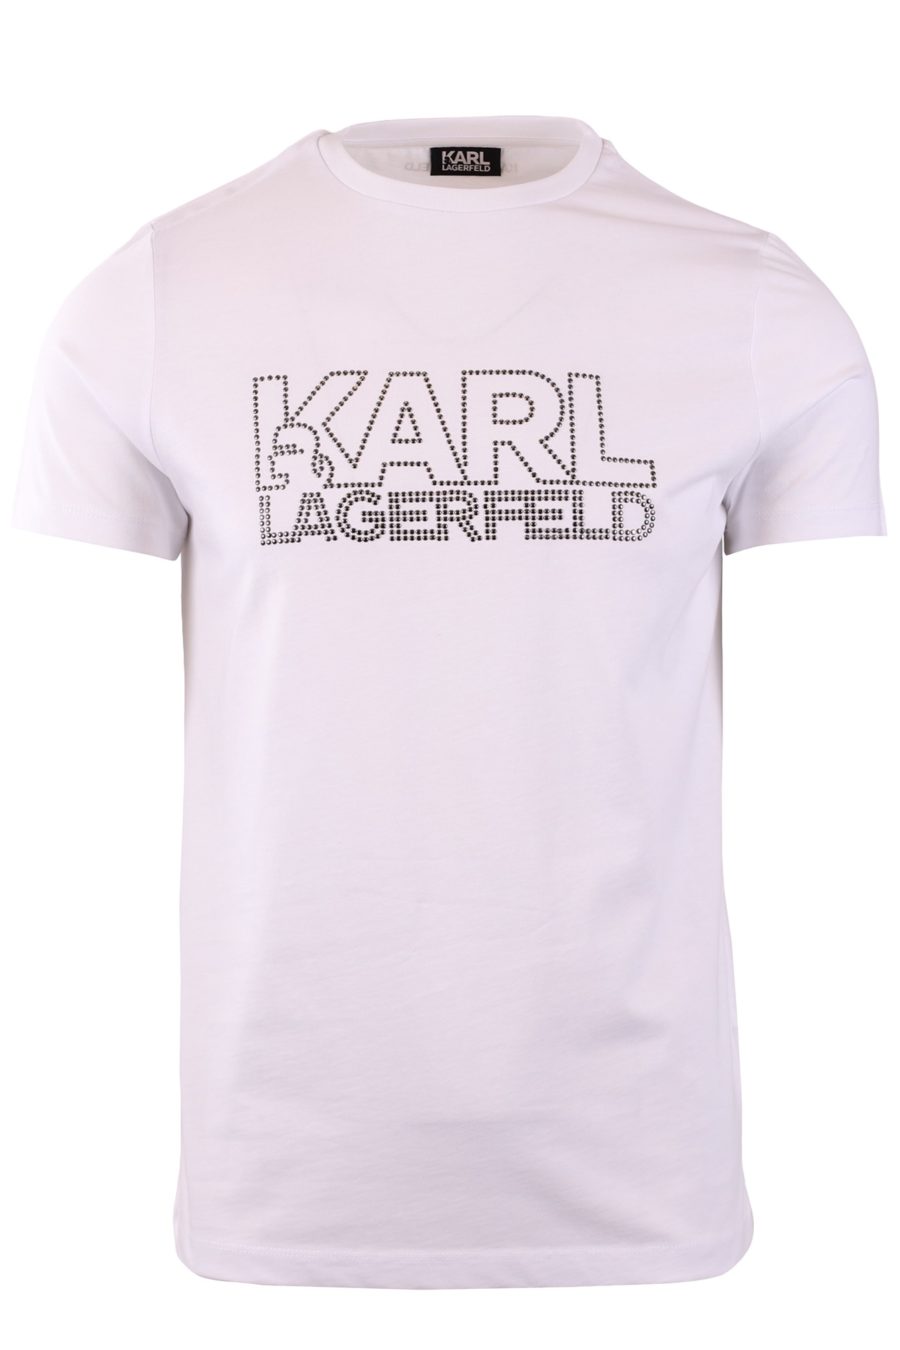 Camiseta blanca con tachuelas "Karl" - 44098668bc051048a362eddf83e317dd37ec9c6f